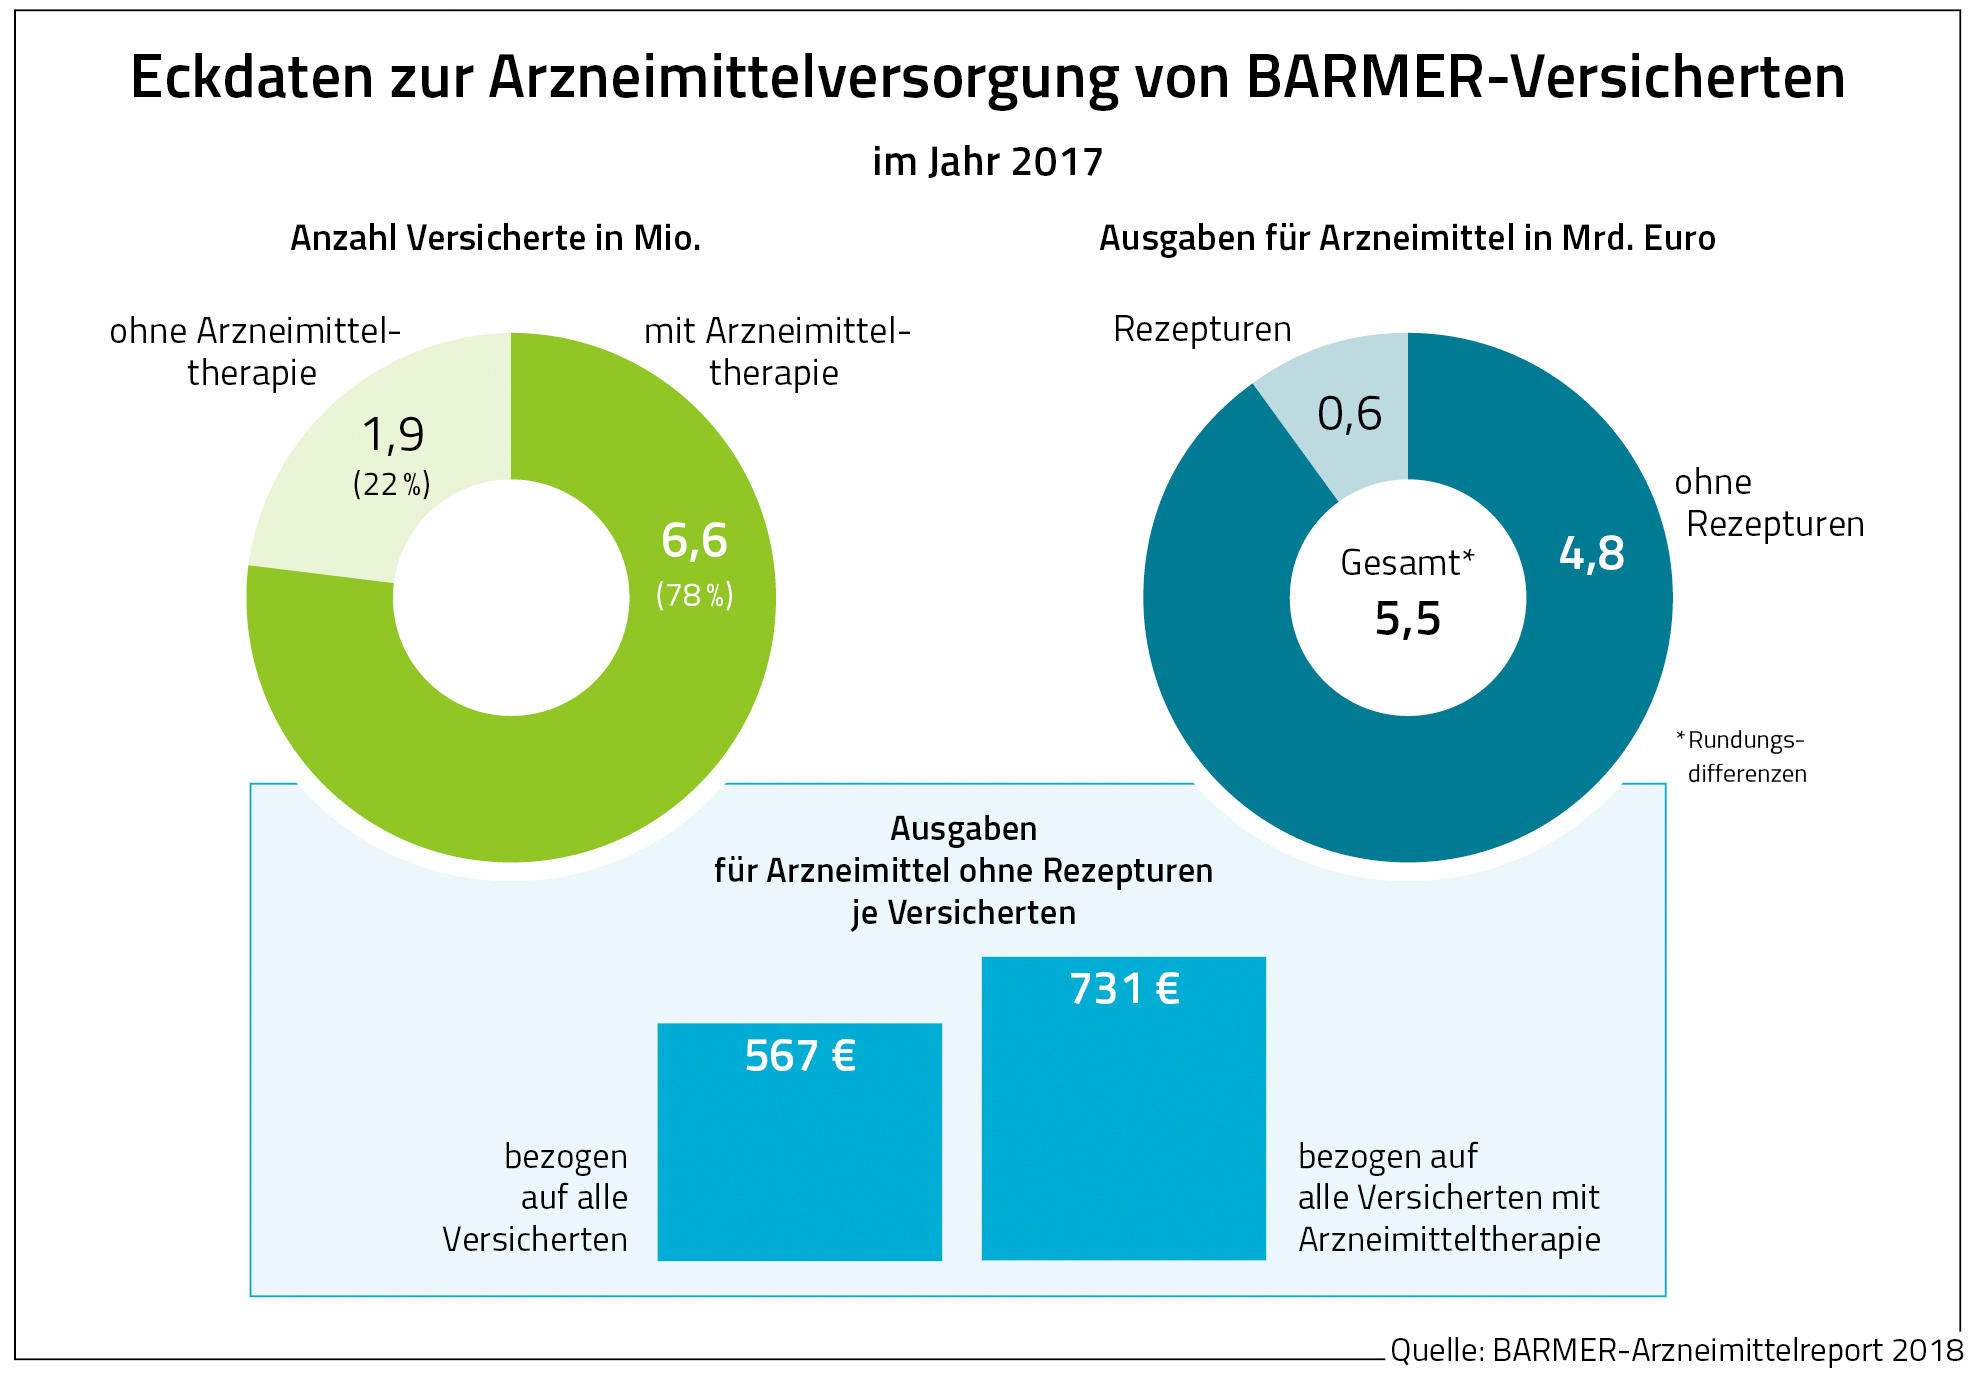 Die Grafik zeigt die Eckdaten zur Arzneimittelversorgung von Barmer-Versicherten im Jahr 2017